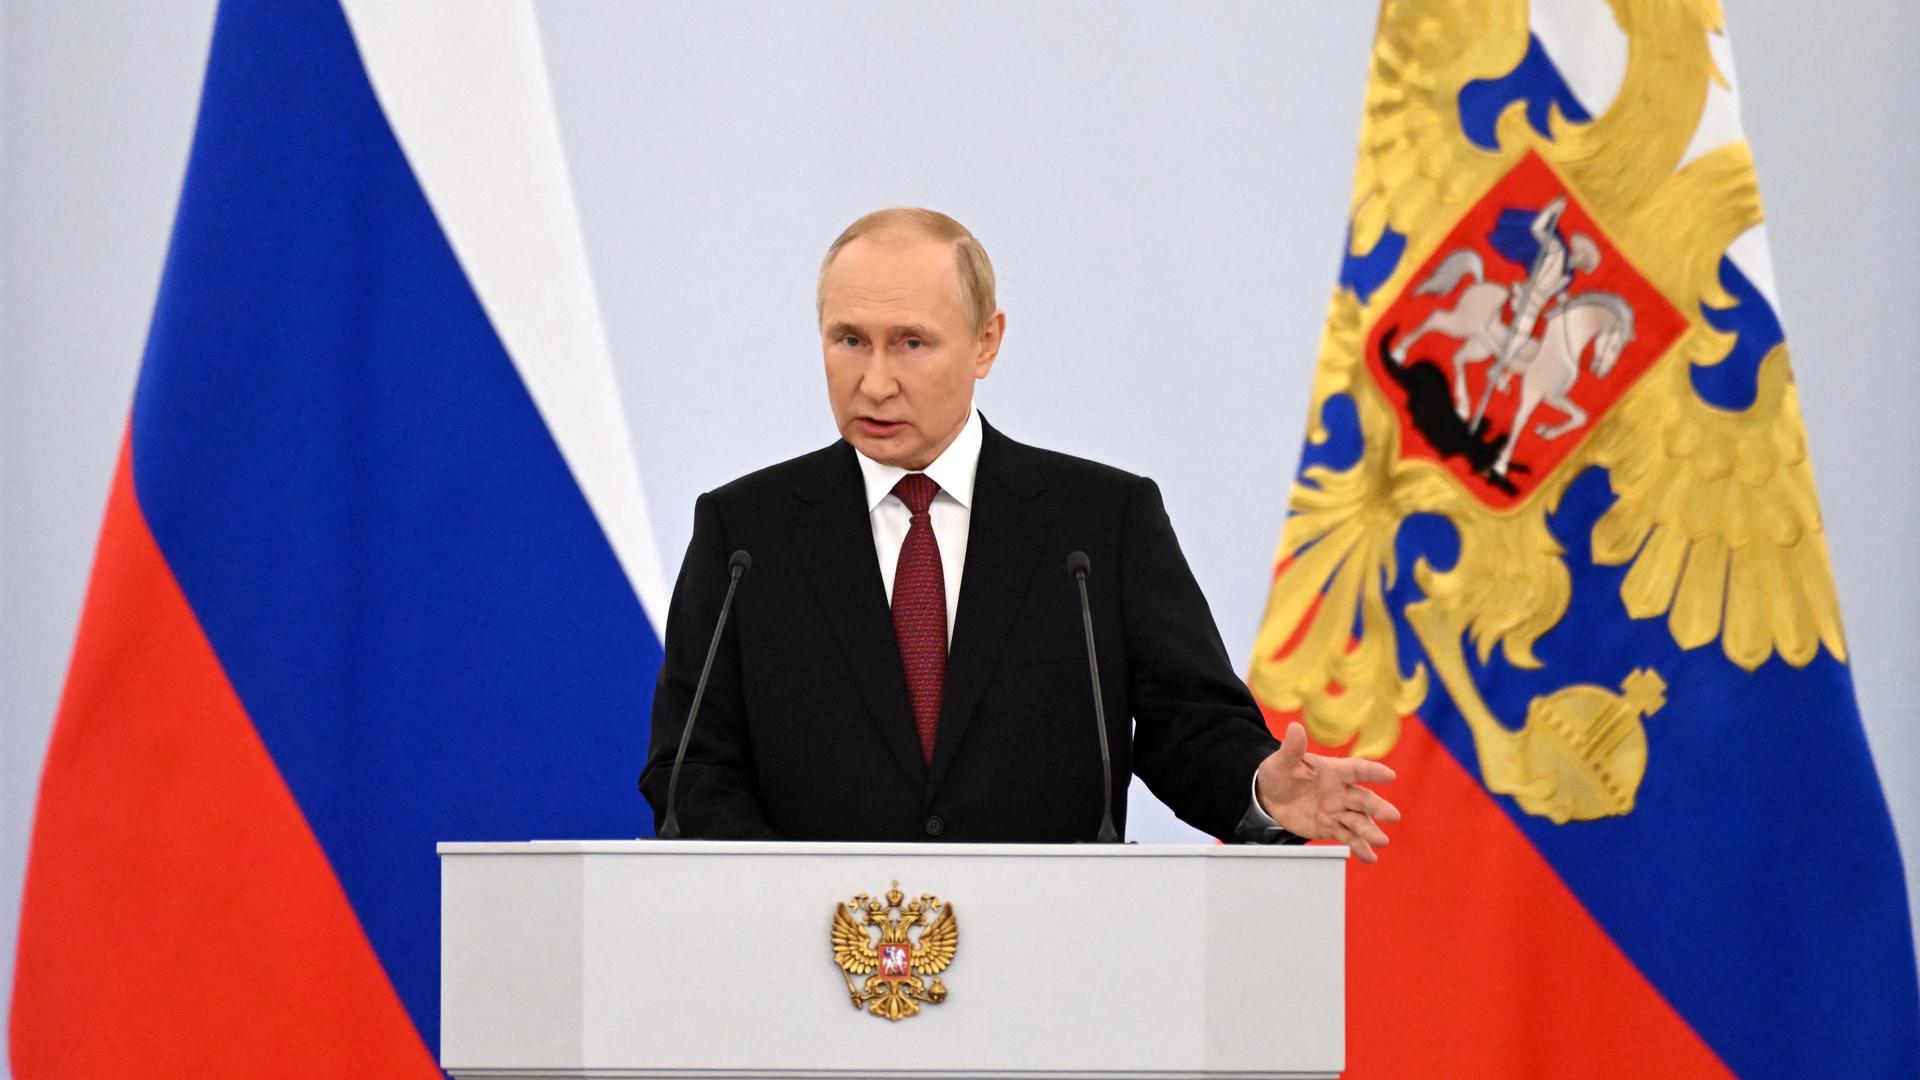 Hasserfüllte Rhetorik: Russlands Präsident Wladimir Putin ruft seine Landsleute zum Kampf gegen die „neokoloniale Herrschaft des sogenannten Westens“ auf.